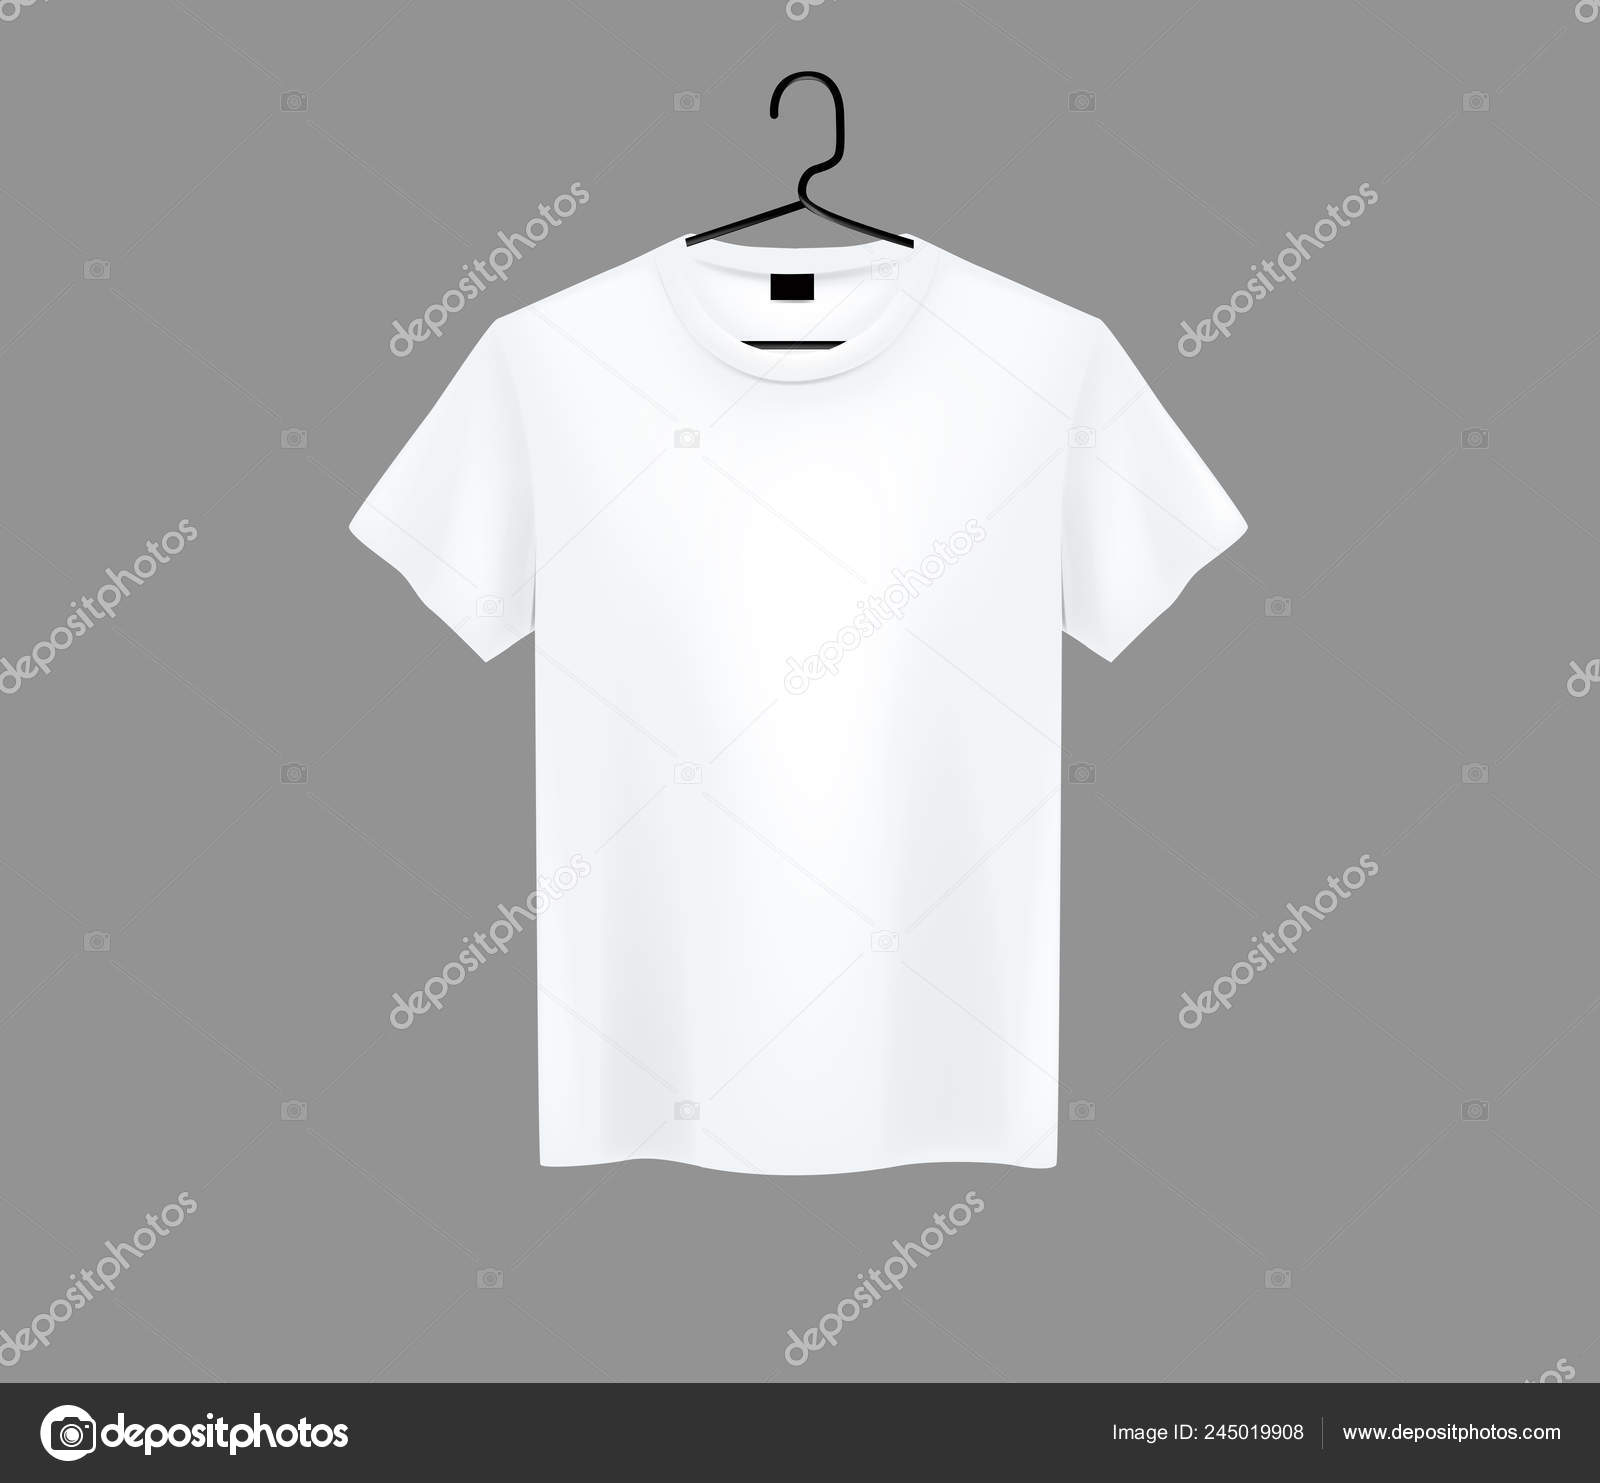 Camiseta de hombre blanca y negra de manga corta. vista frontal.